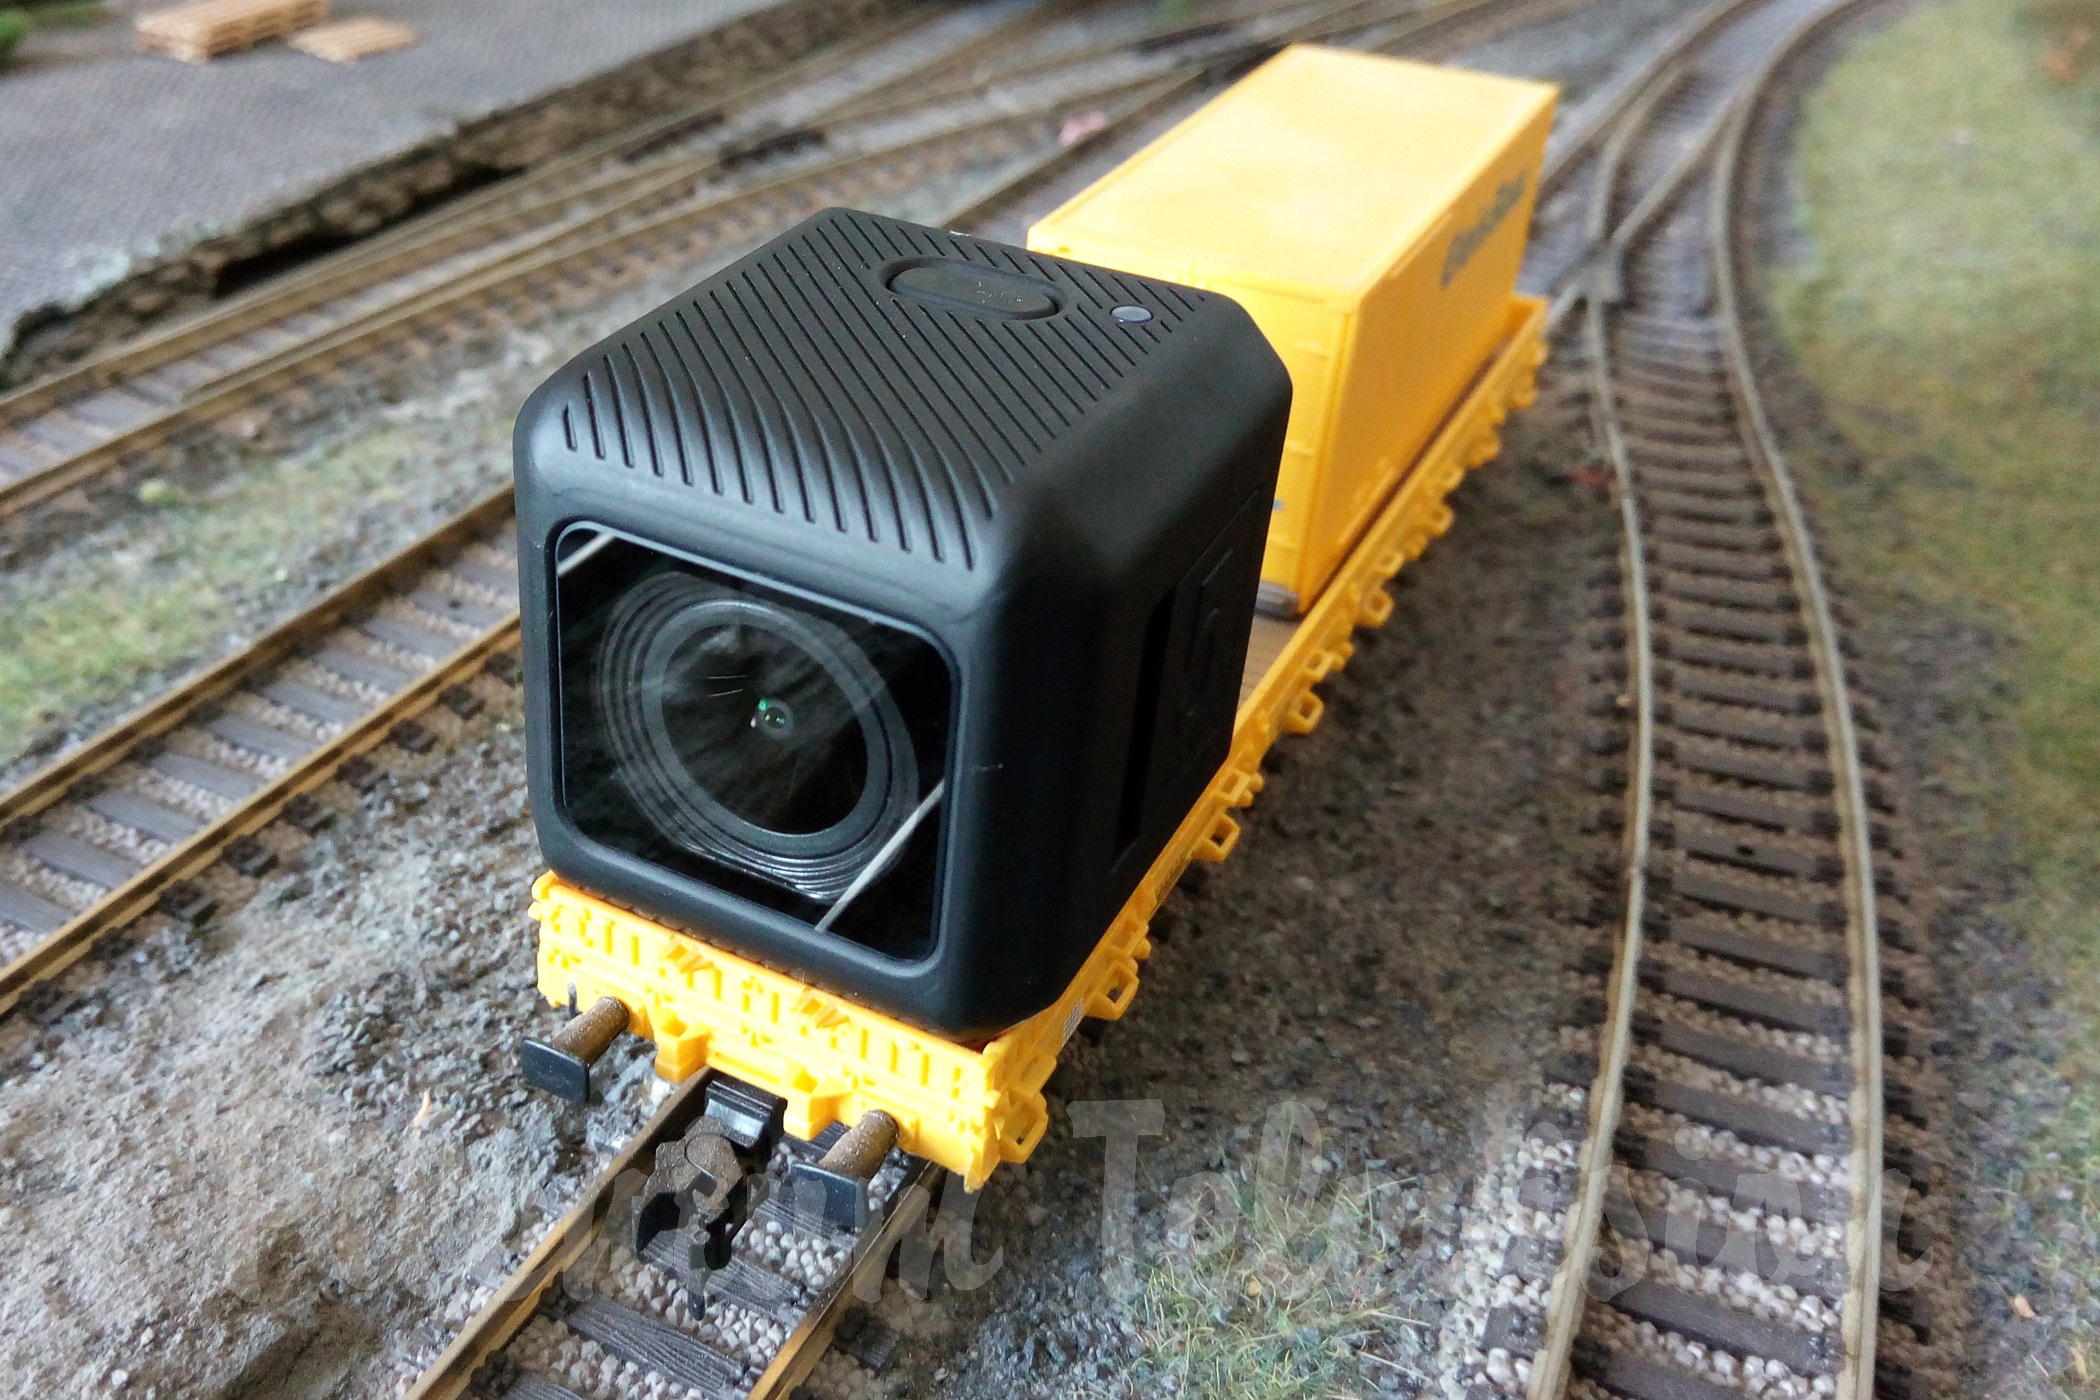 Cameră Video Runcam 5 Orange este o copie a camerei GoPro Session 5. Puteți instala cu ușurință această cameră video pe o vagon de cale ferată pentru a face fotografii și videoclipuri.